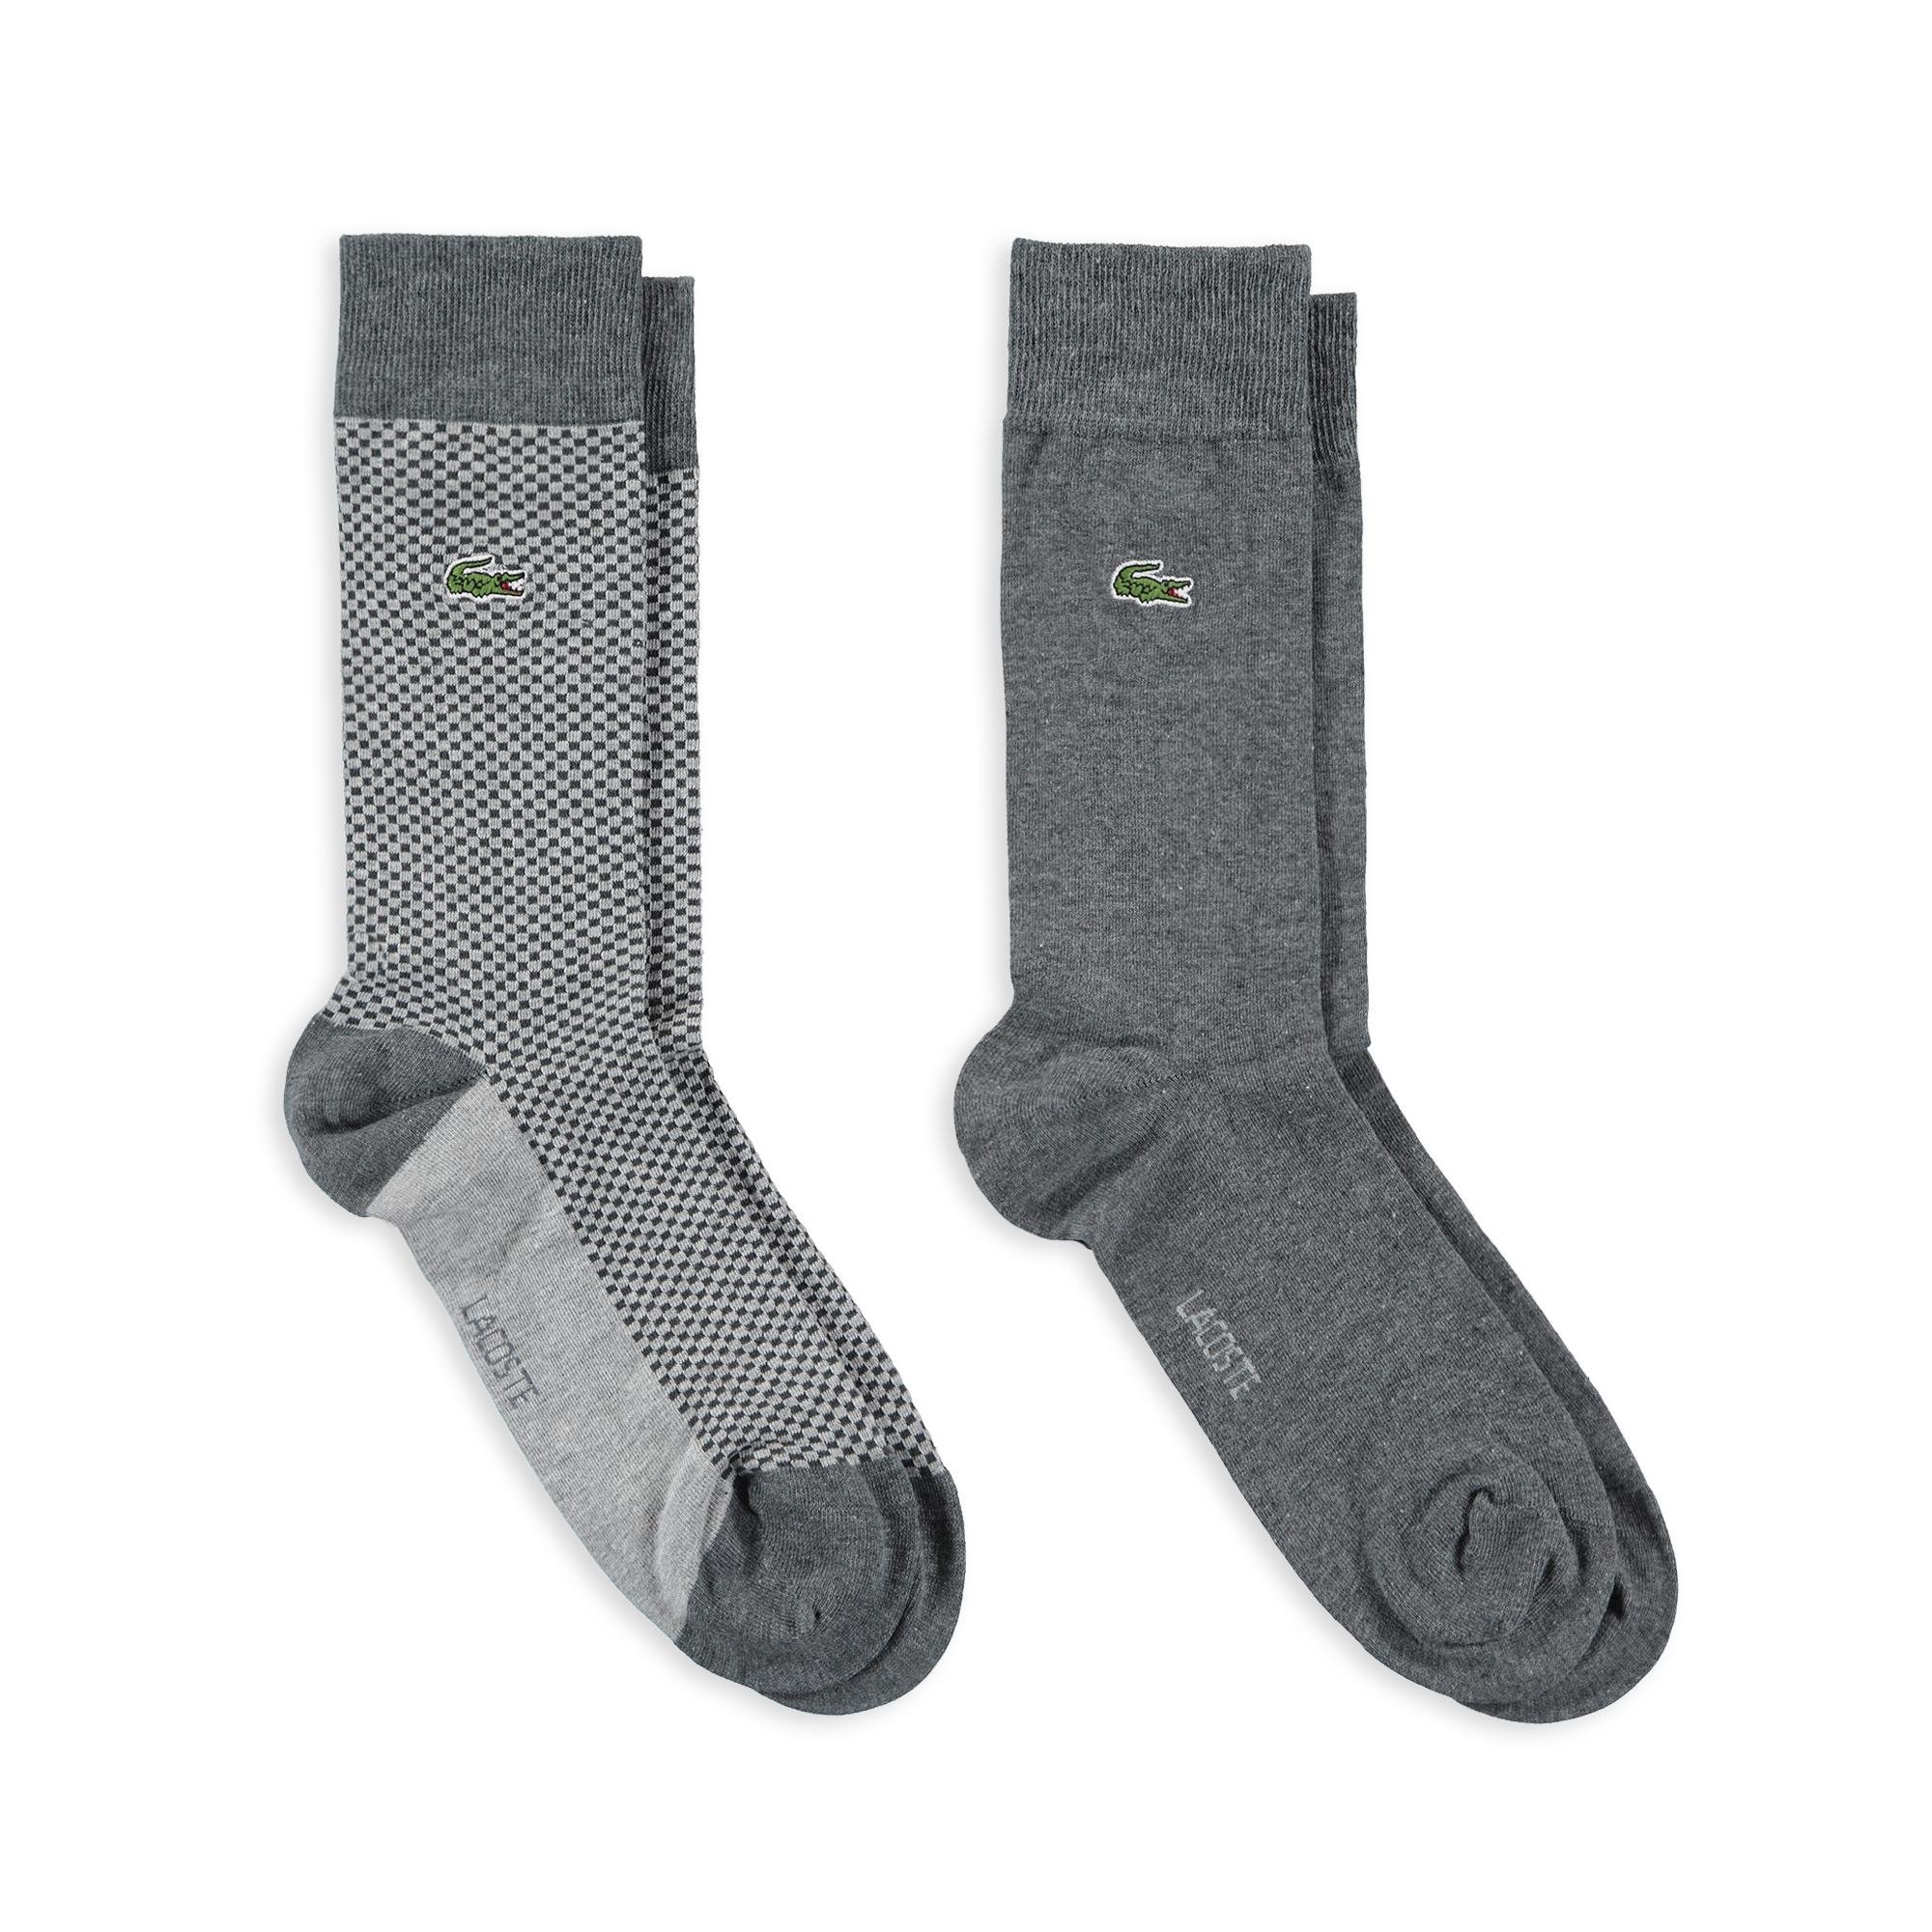 Lacoste Men's 2-Pack Socks